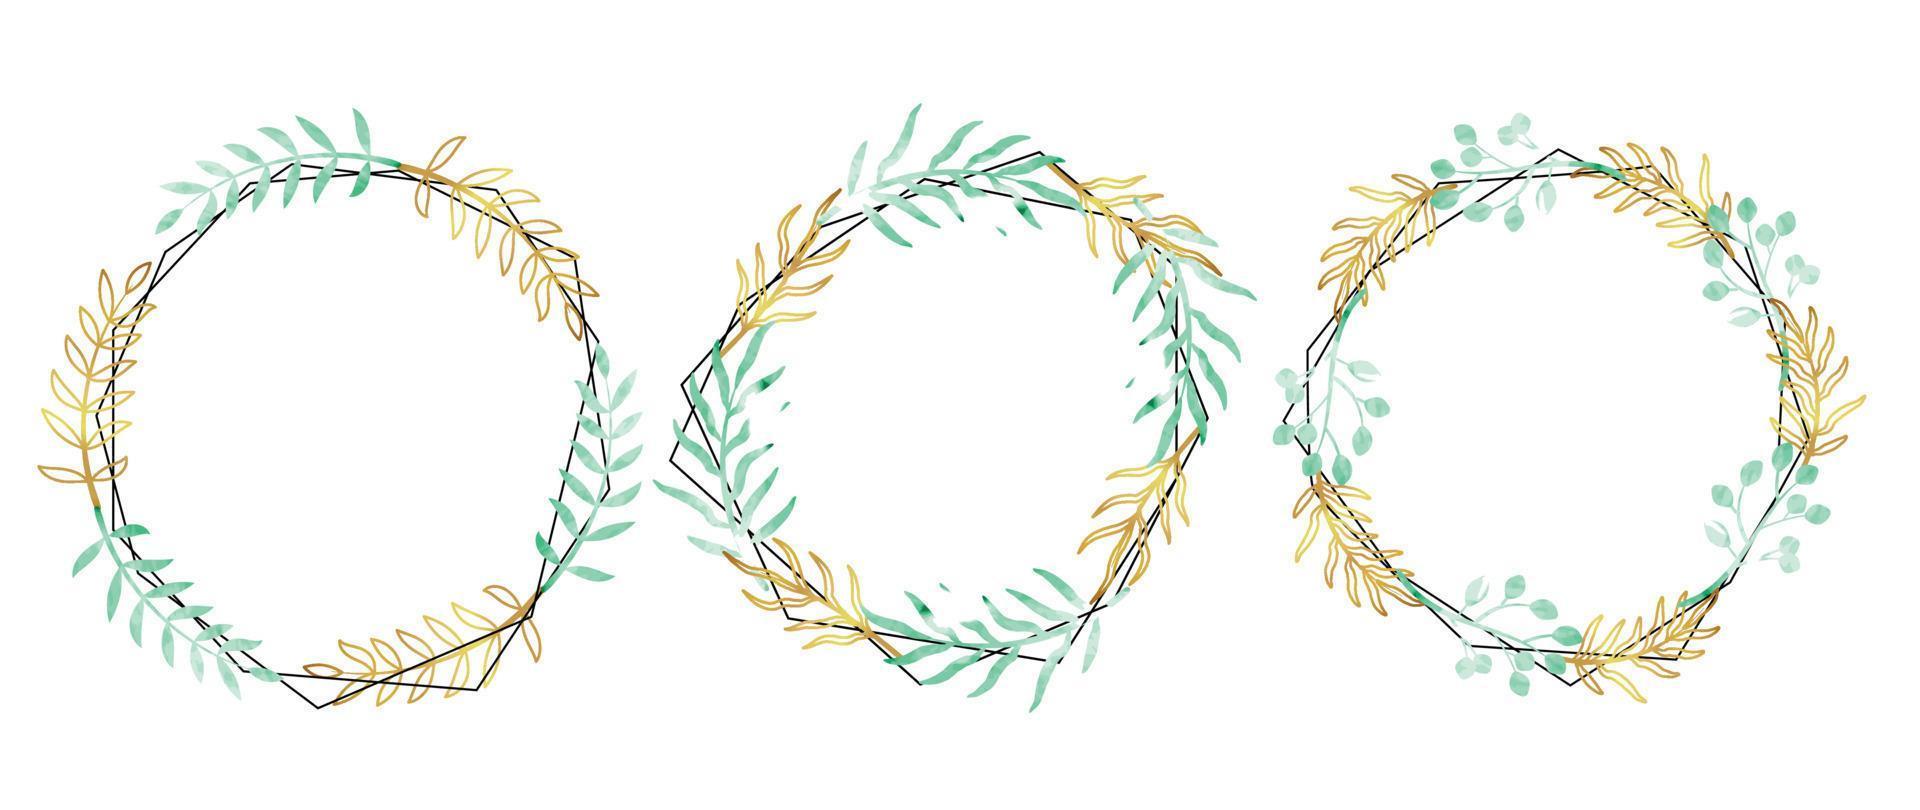 Set of luxury wedding frame element vector illustration. Watercolor and golden botanical leaf branch vine line art on polygonal frame. Design suitable for frame, invitation card, poster, banner.